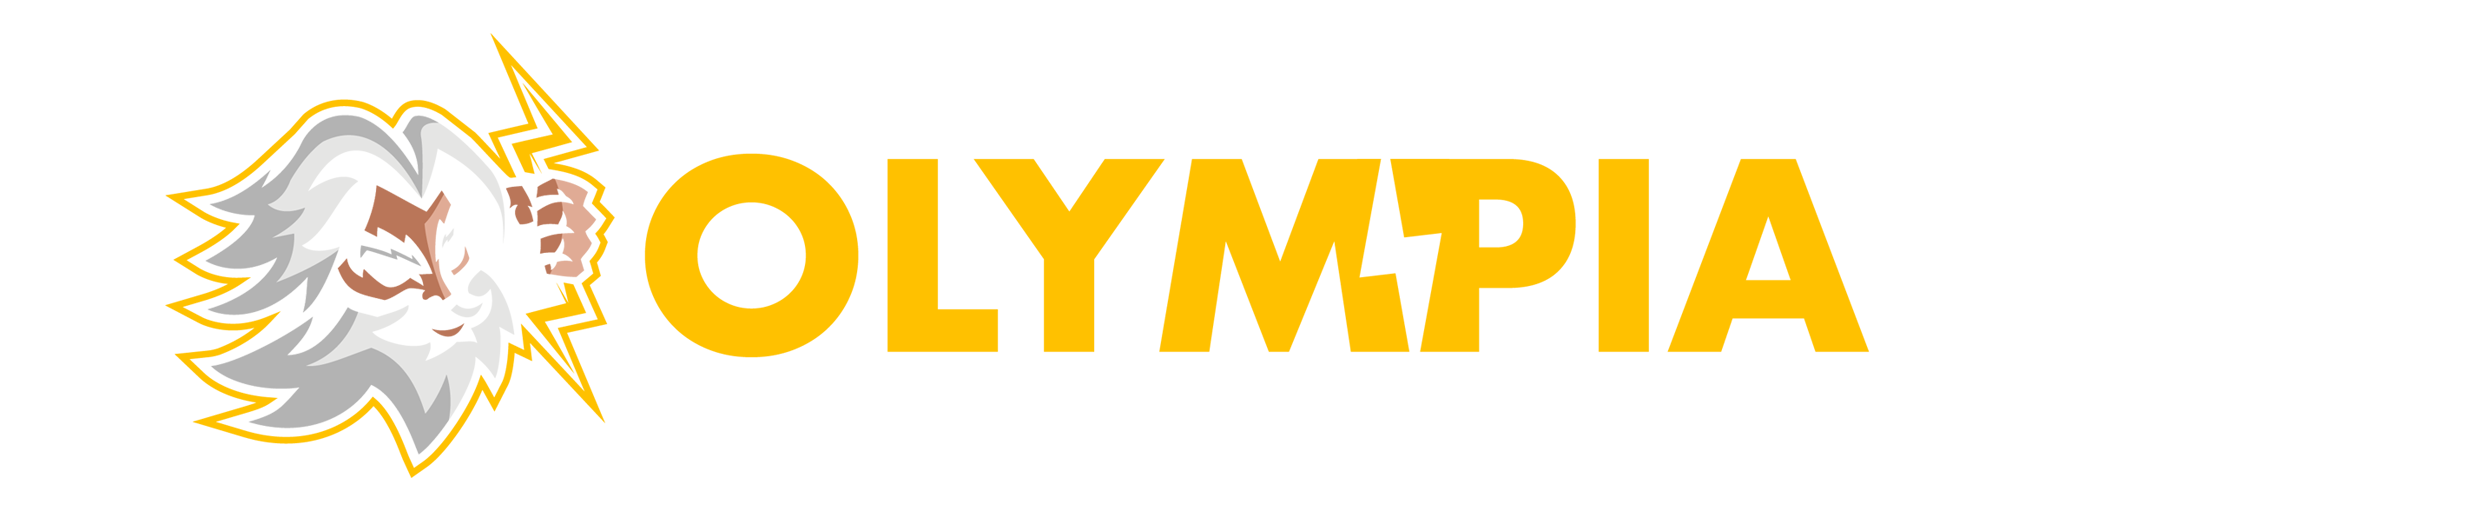 olympiabet logo